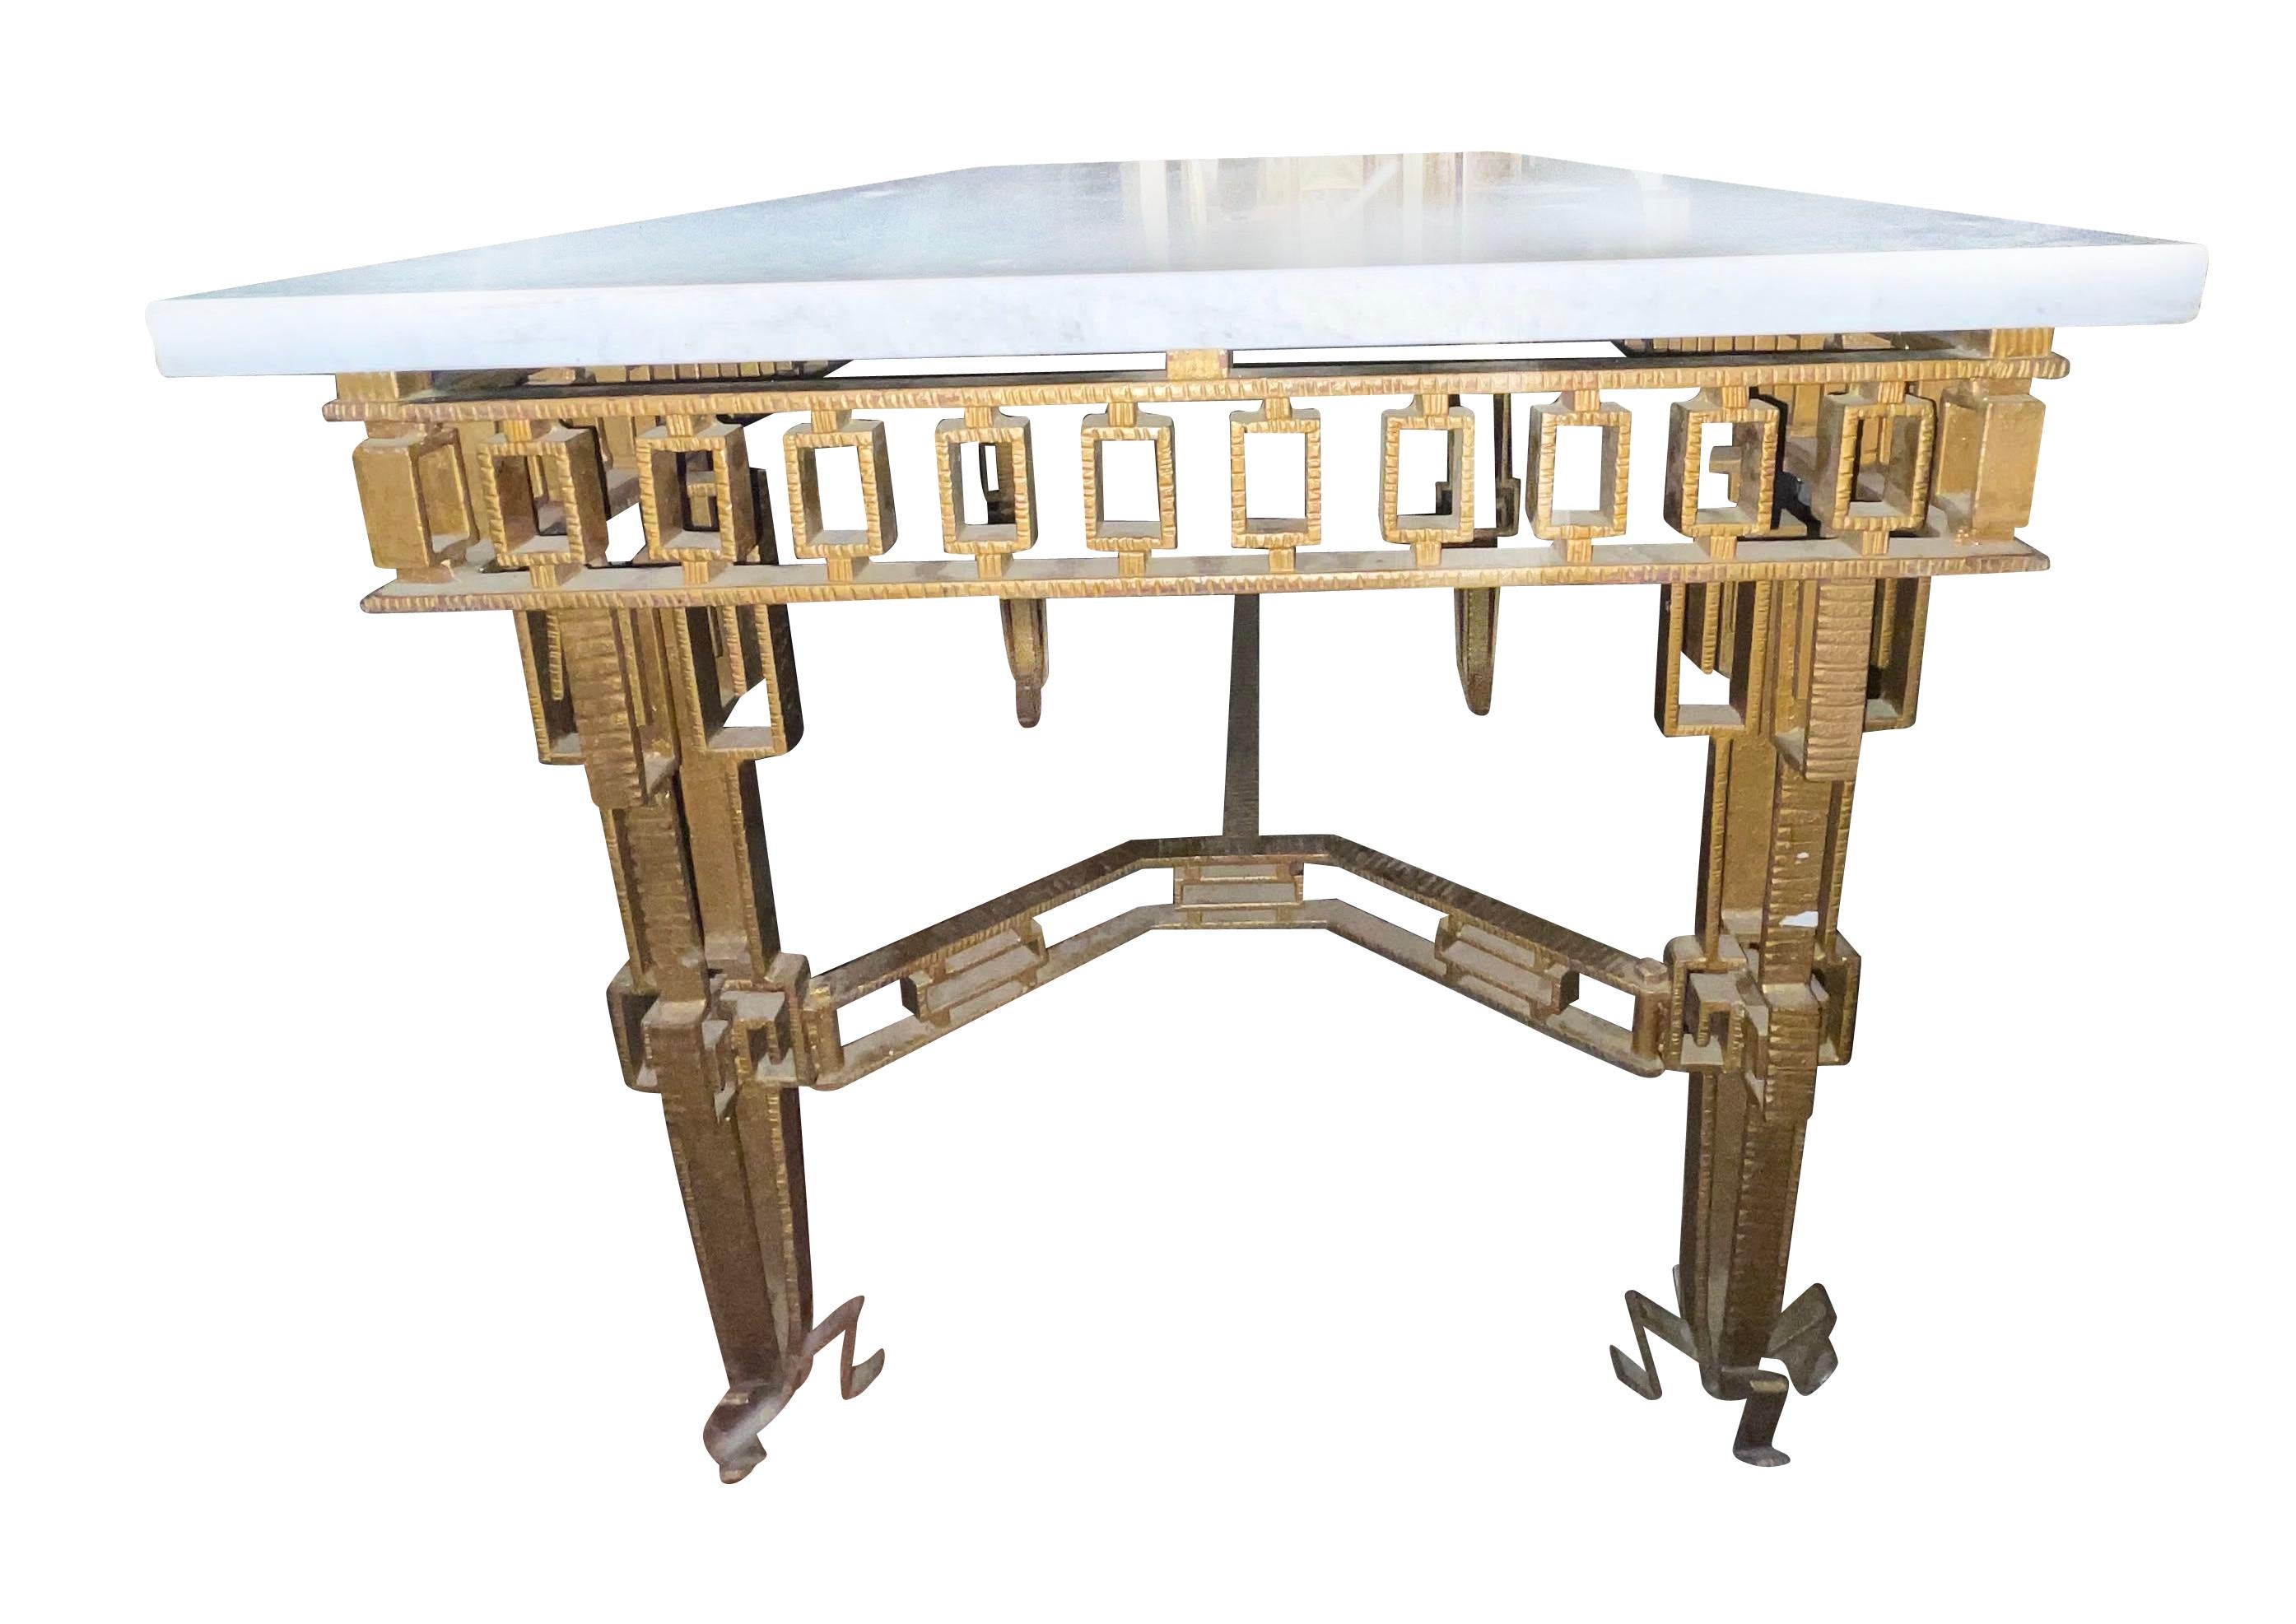 table console espagnole en fer doré des années 1960 dans le style de Jean Royere.
Intéressants détails décoratifs sur le tablier, les traverses et les pieds.
Plateau en marbre blanc épais.
Peut également être utilisée comme table de centre de